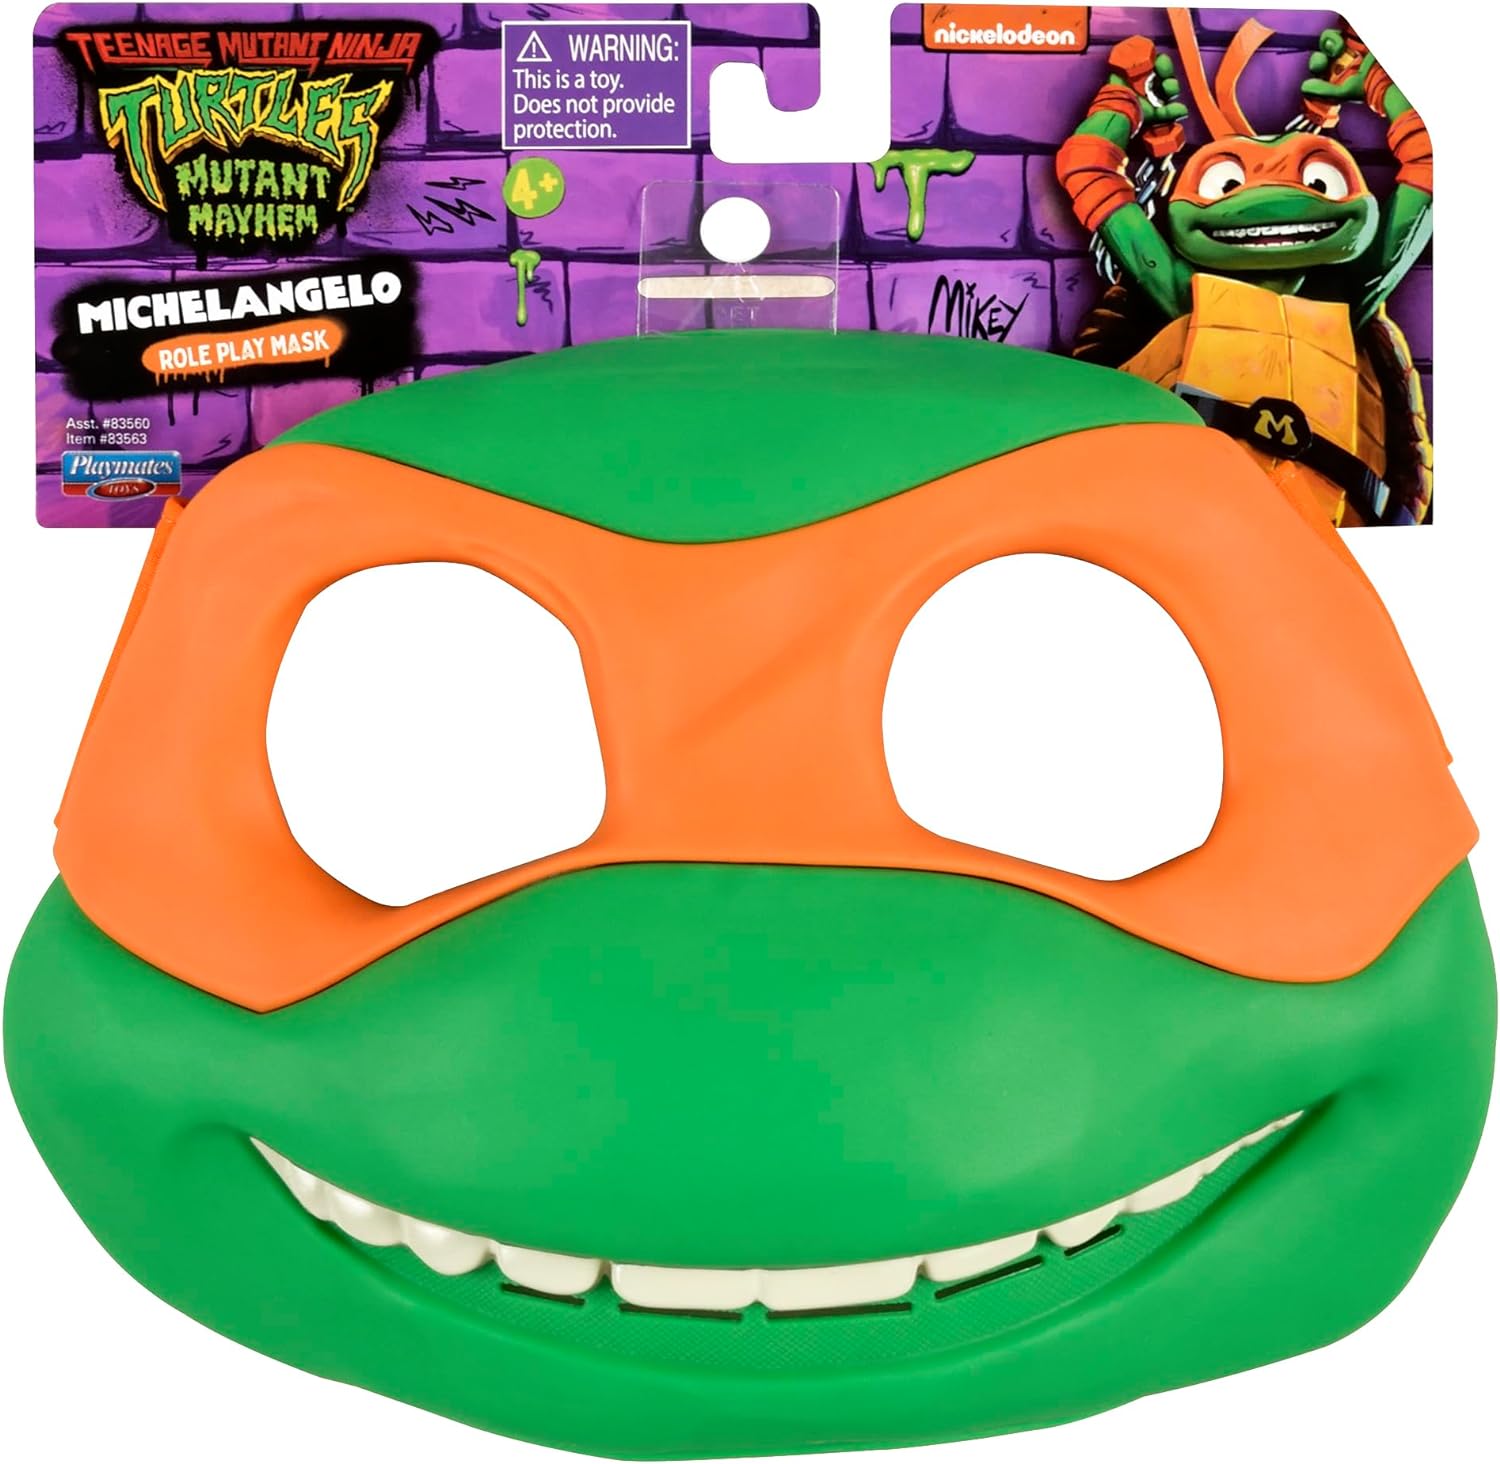 Teenage Mutant Ninja Turtles Mutant Mayhem MICHELANGELO Role Play Mask